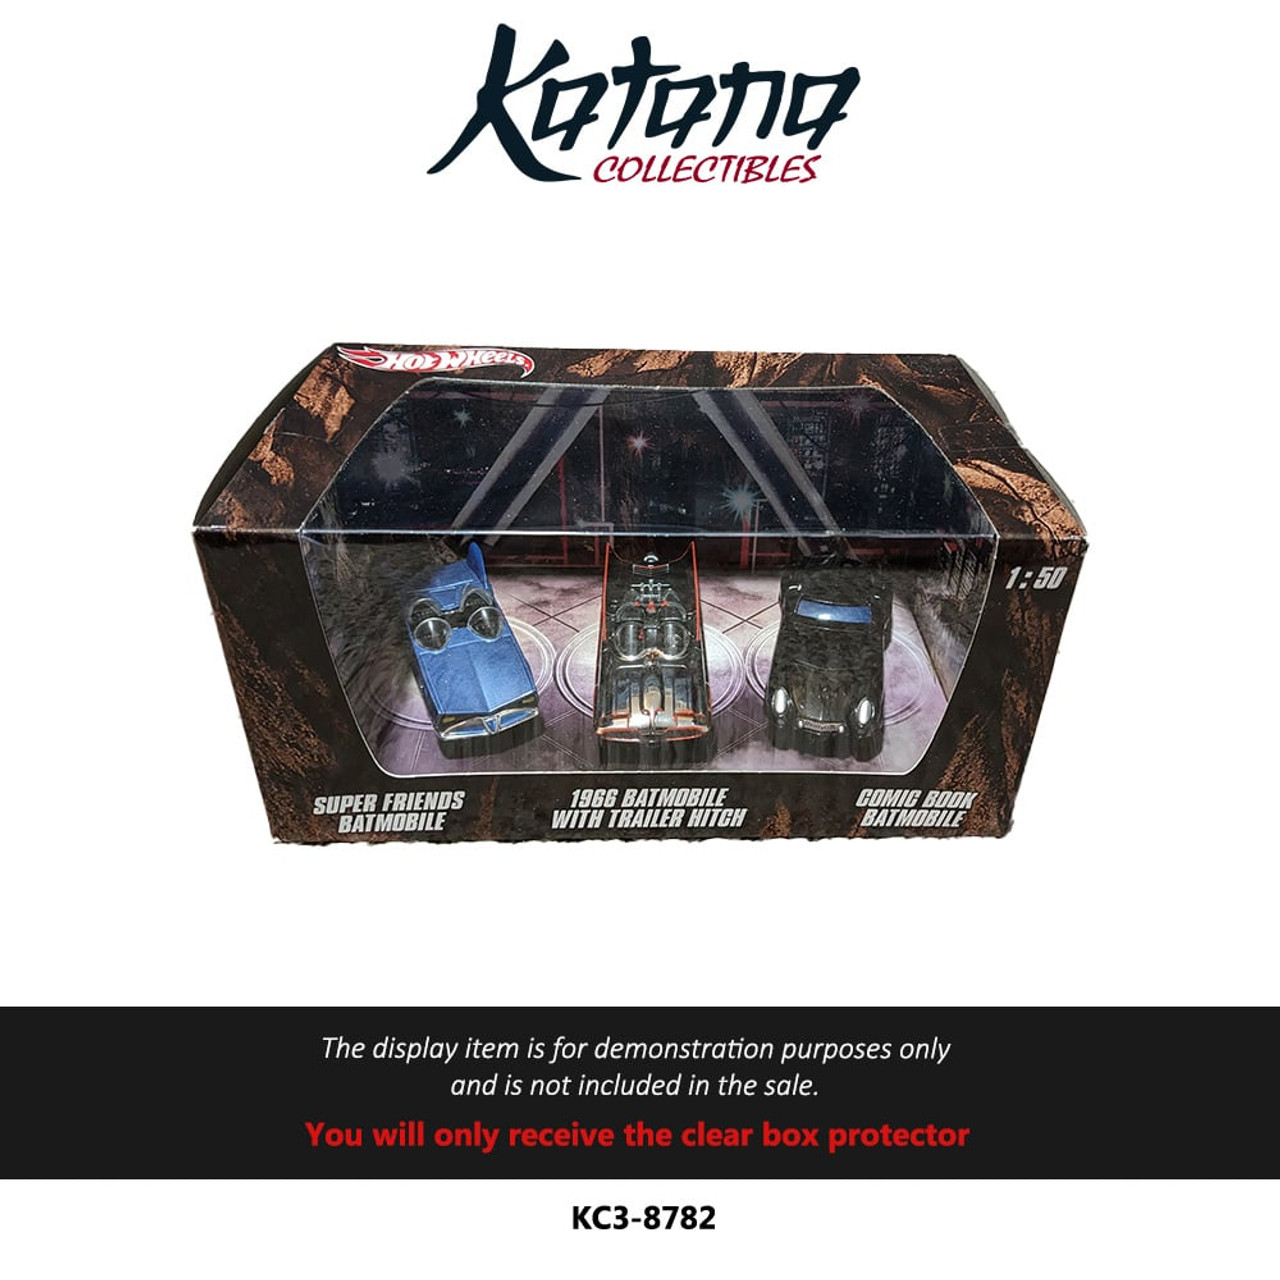 Katana Collectibles Protector For Hot Wheels Batmobile 3 Car Set